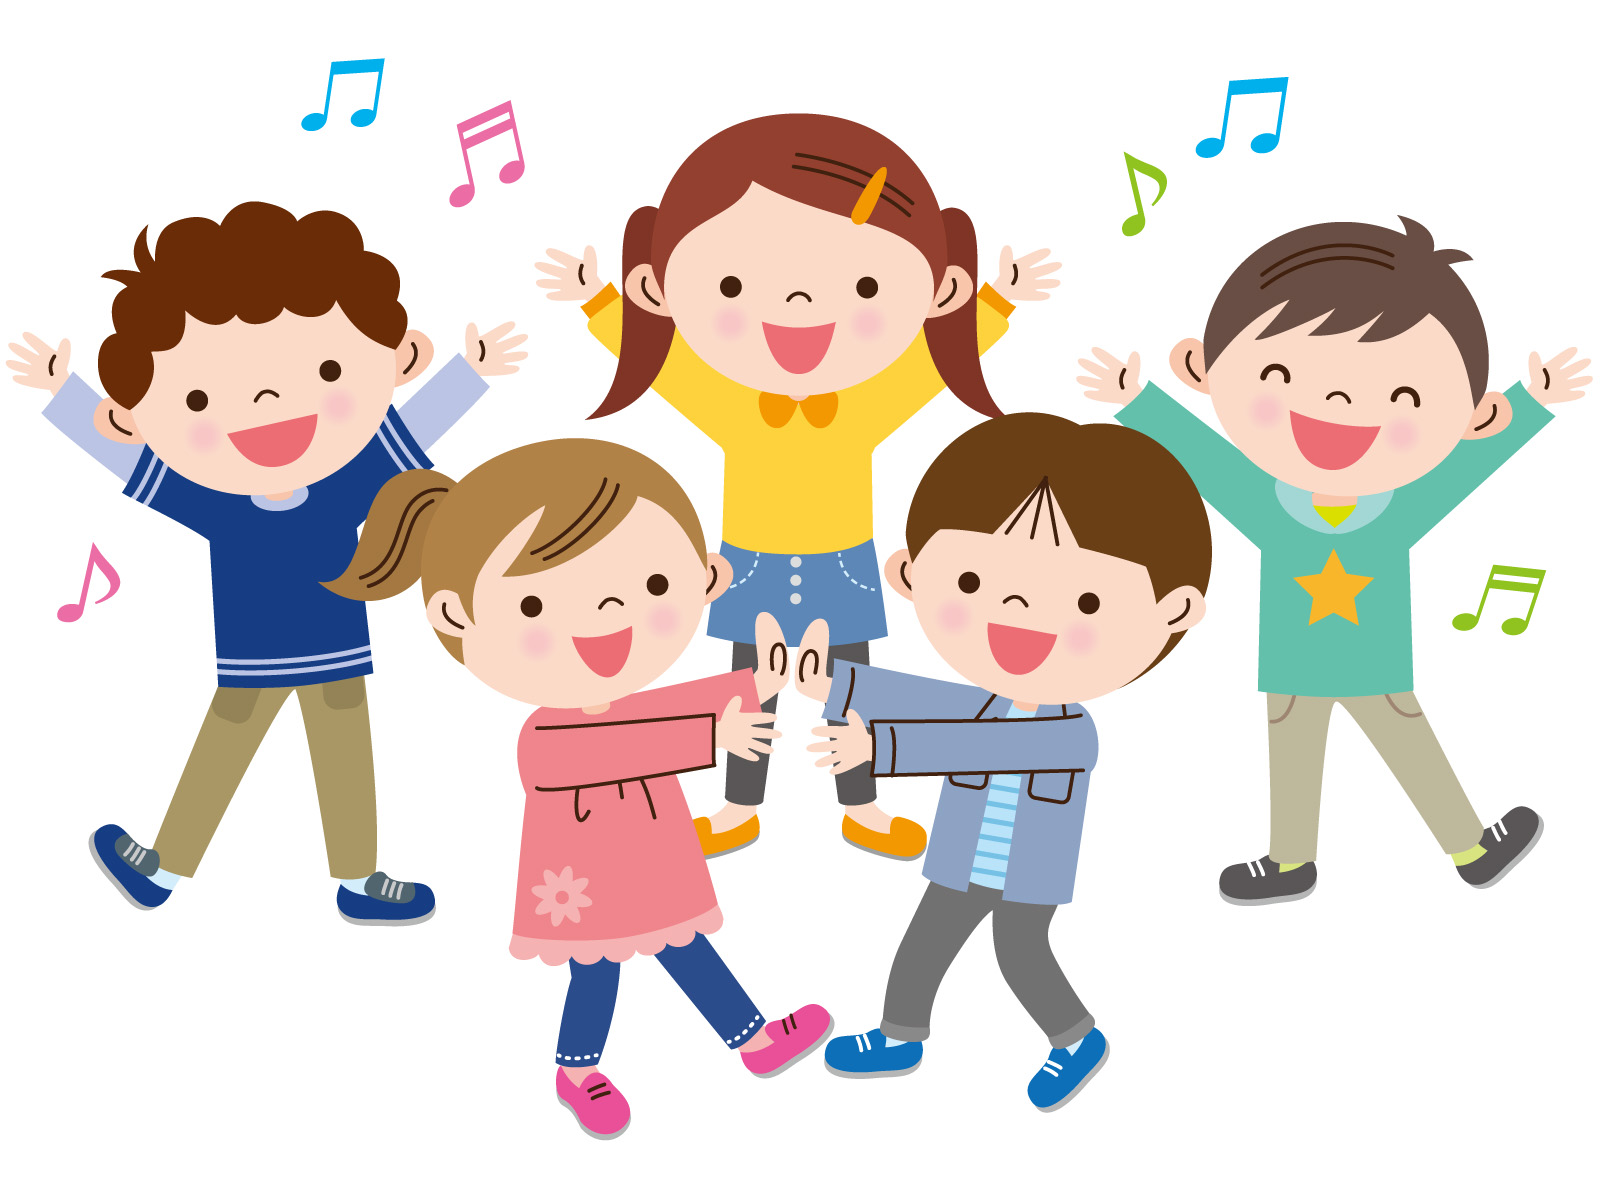 リズムトレーニング で子どもの運動能力を高めよう 12月9日に草津市にて Usf First Challenge123 開催 要申込 参加無料 滋賀のママがイベント 育児 遊び 学びを発信 シガマンマ ピースマム